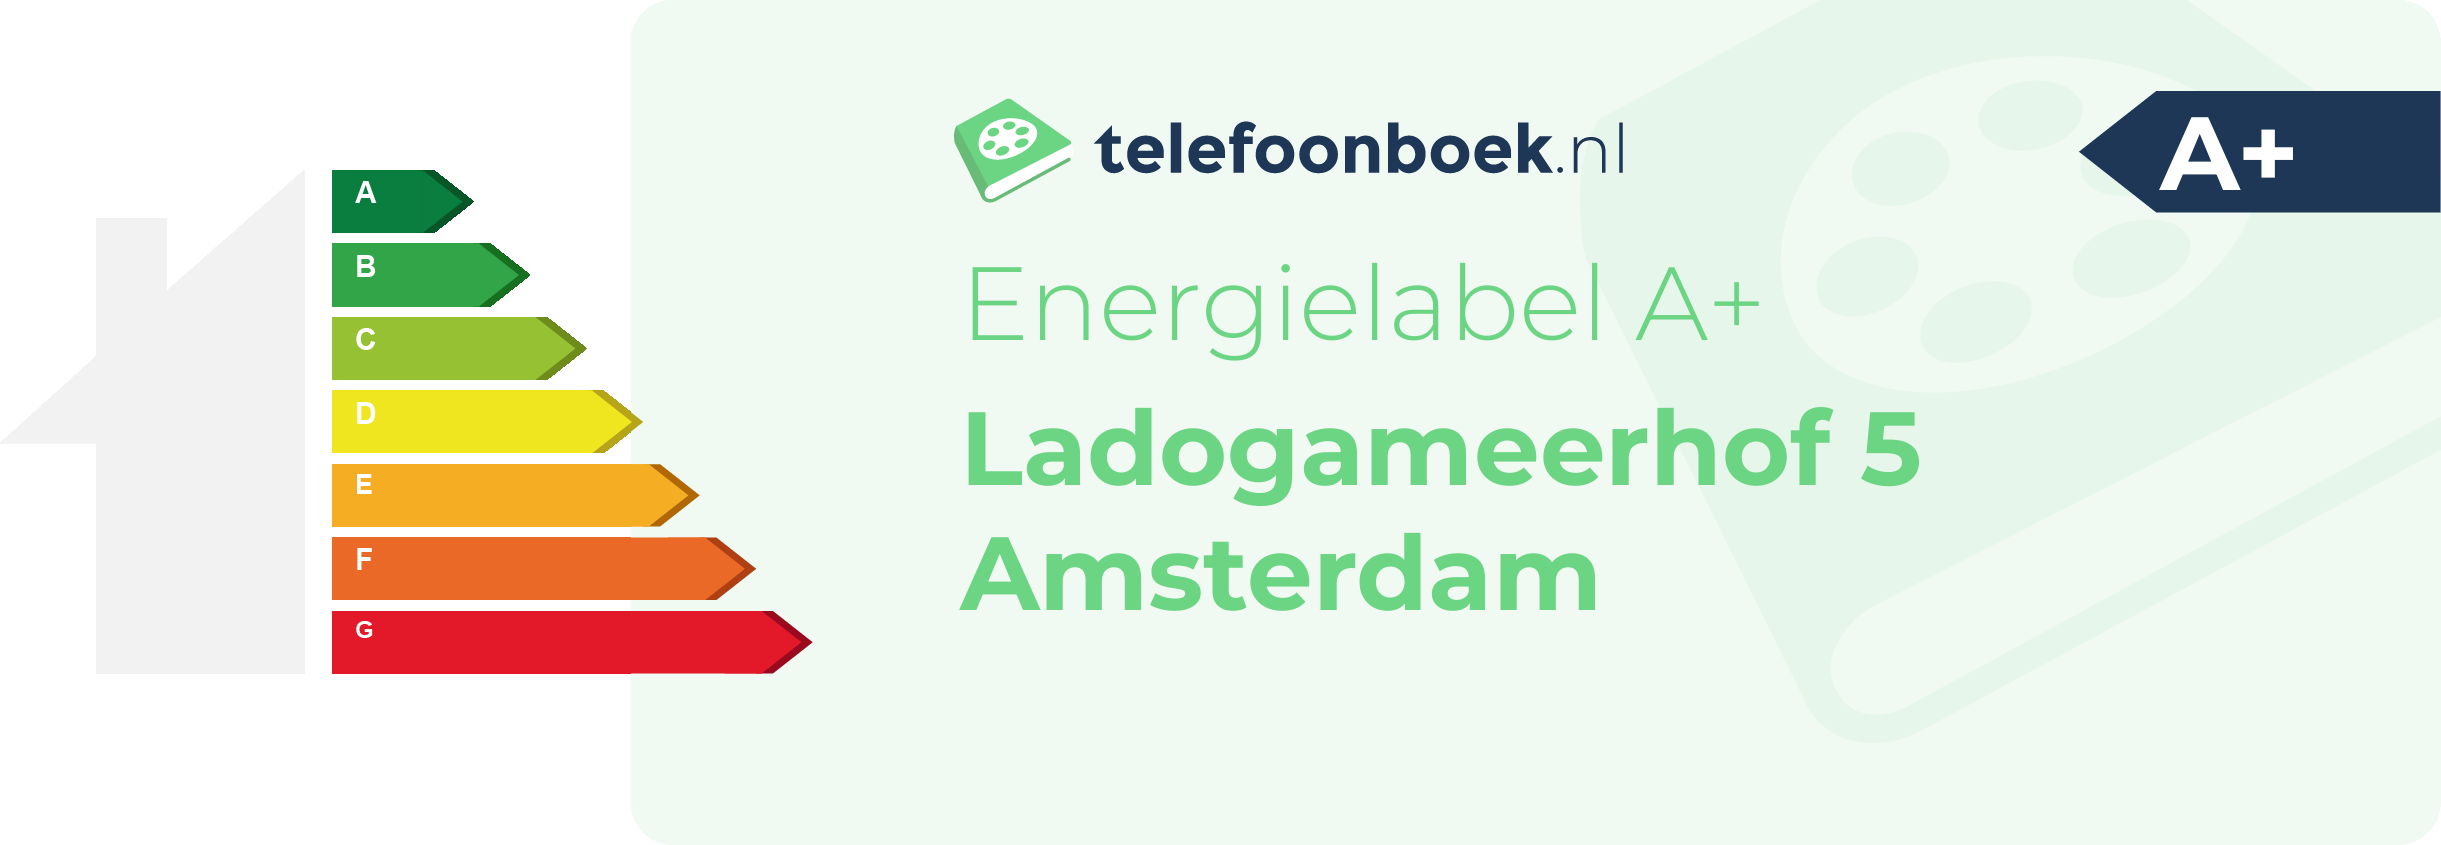 Energielabel Ladogameerhof 5 Amsterdam